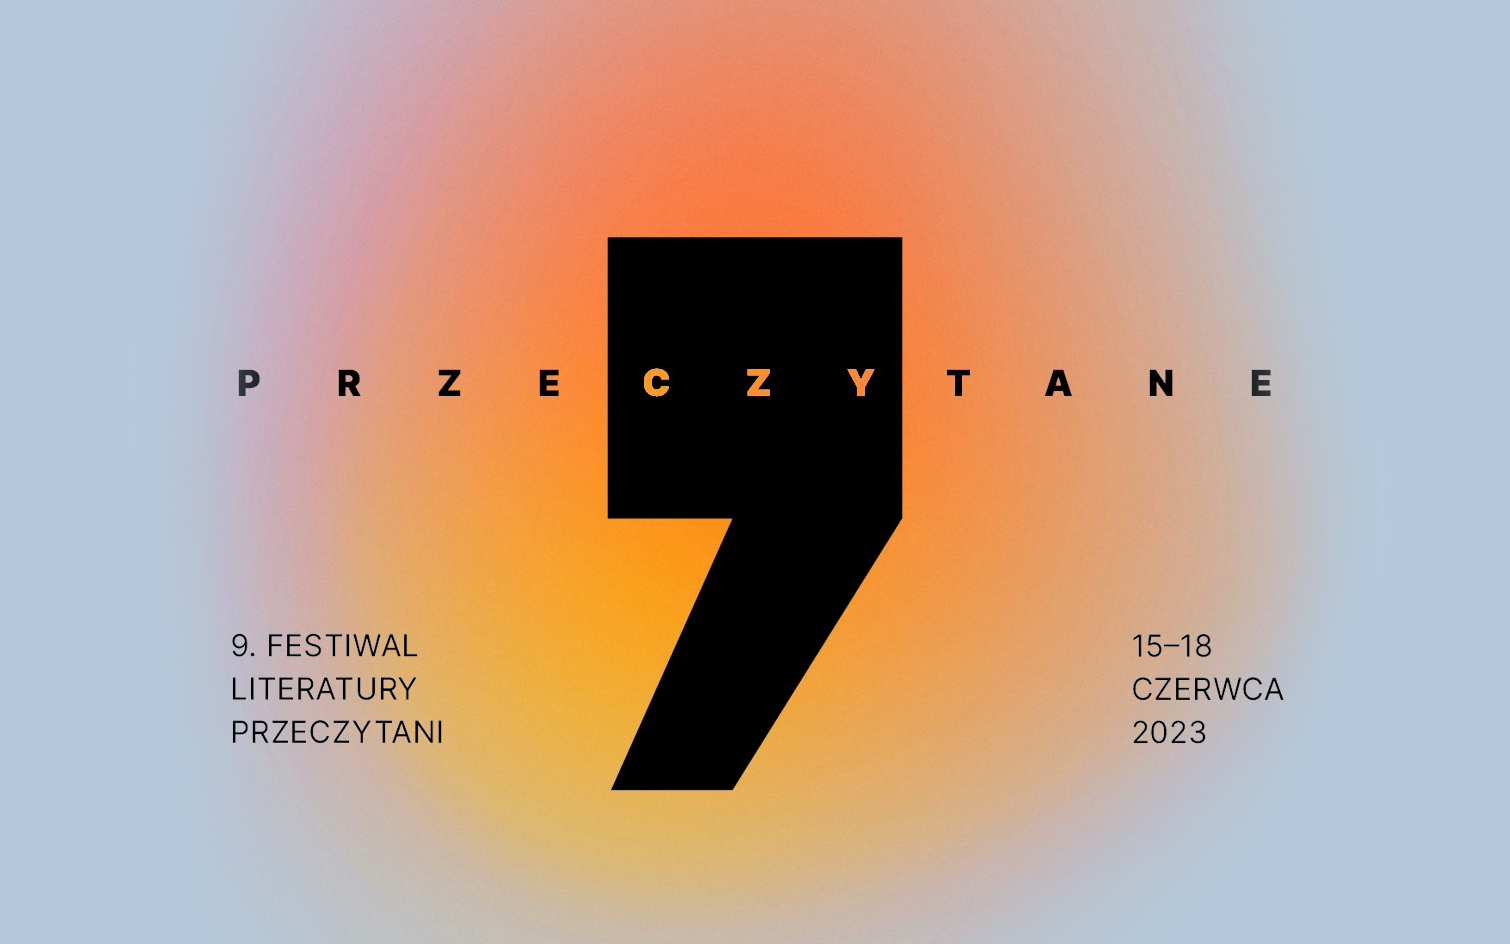 9. Festiwal Literatury PRZECZYTANI 2023 – program